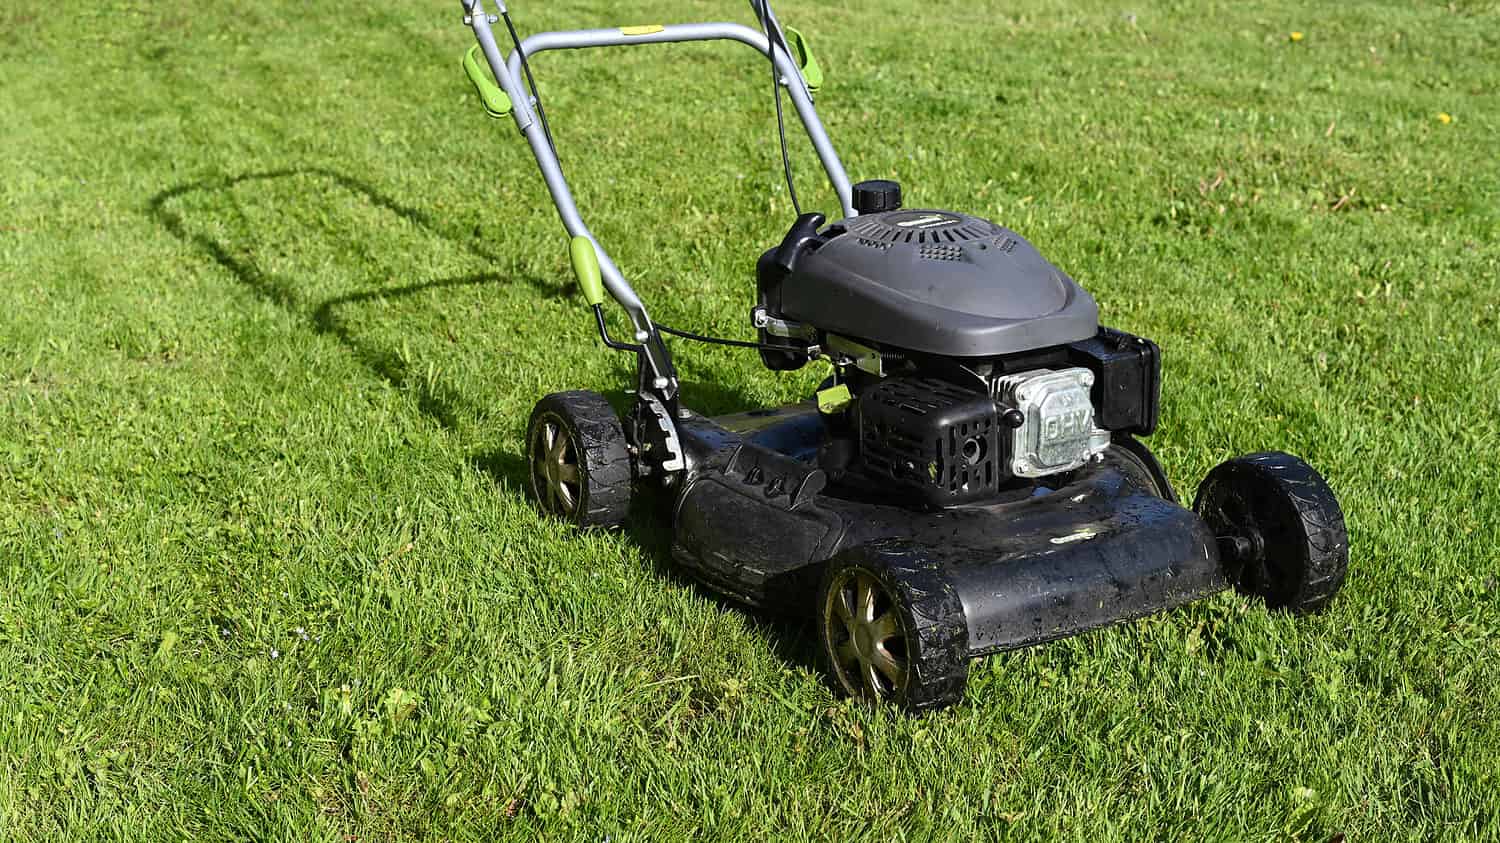 Petrol powered lawnmower on freshly mowed grass